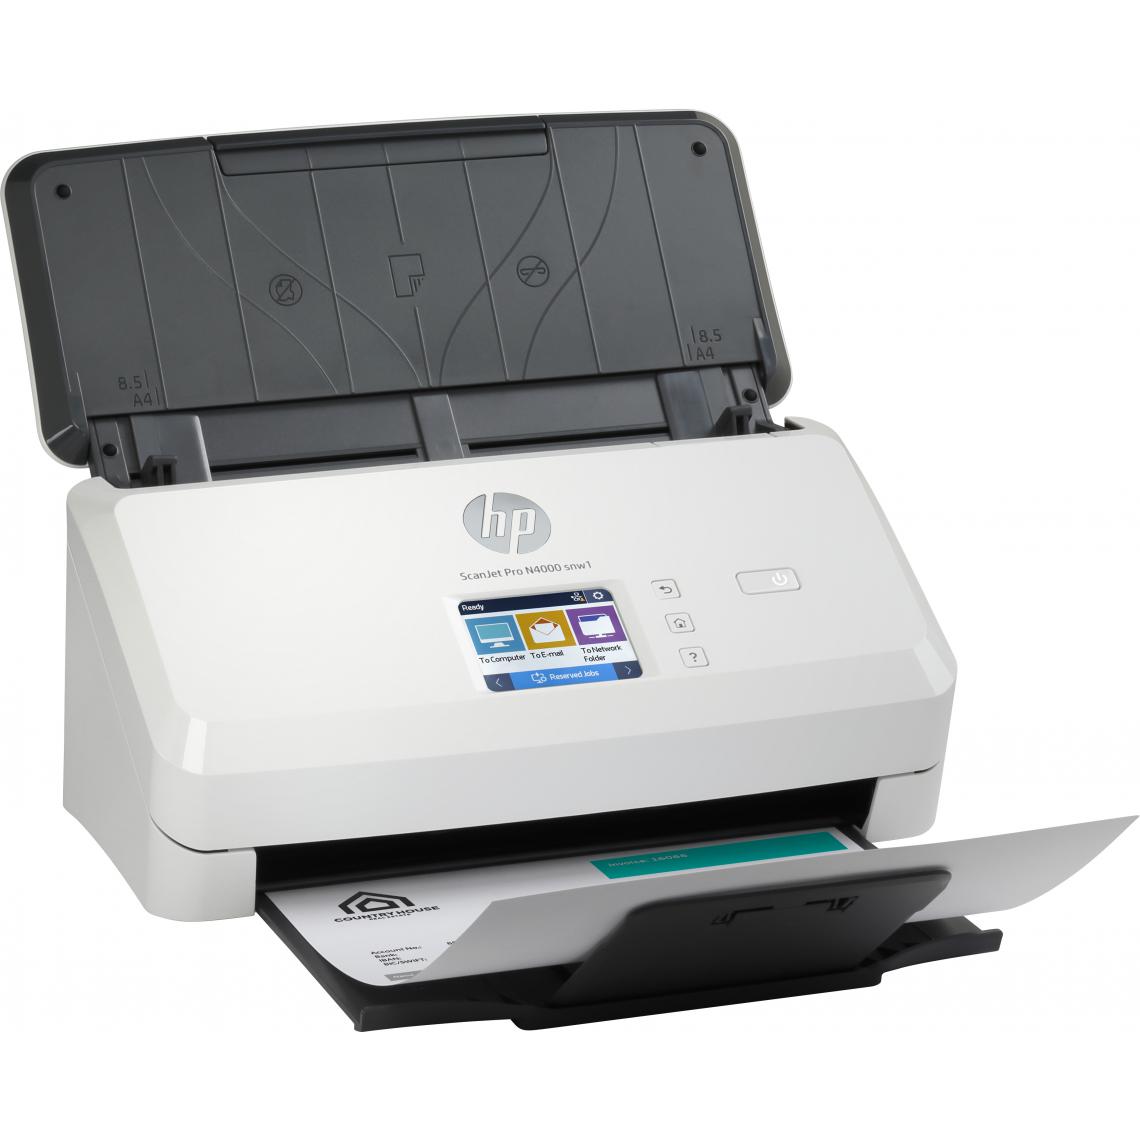 Hp - ScanJet Pro N4000 snw1 - Scanner